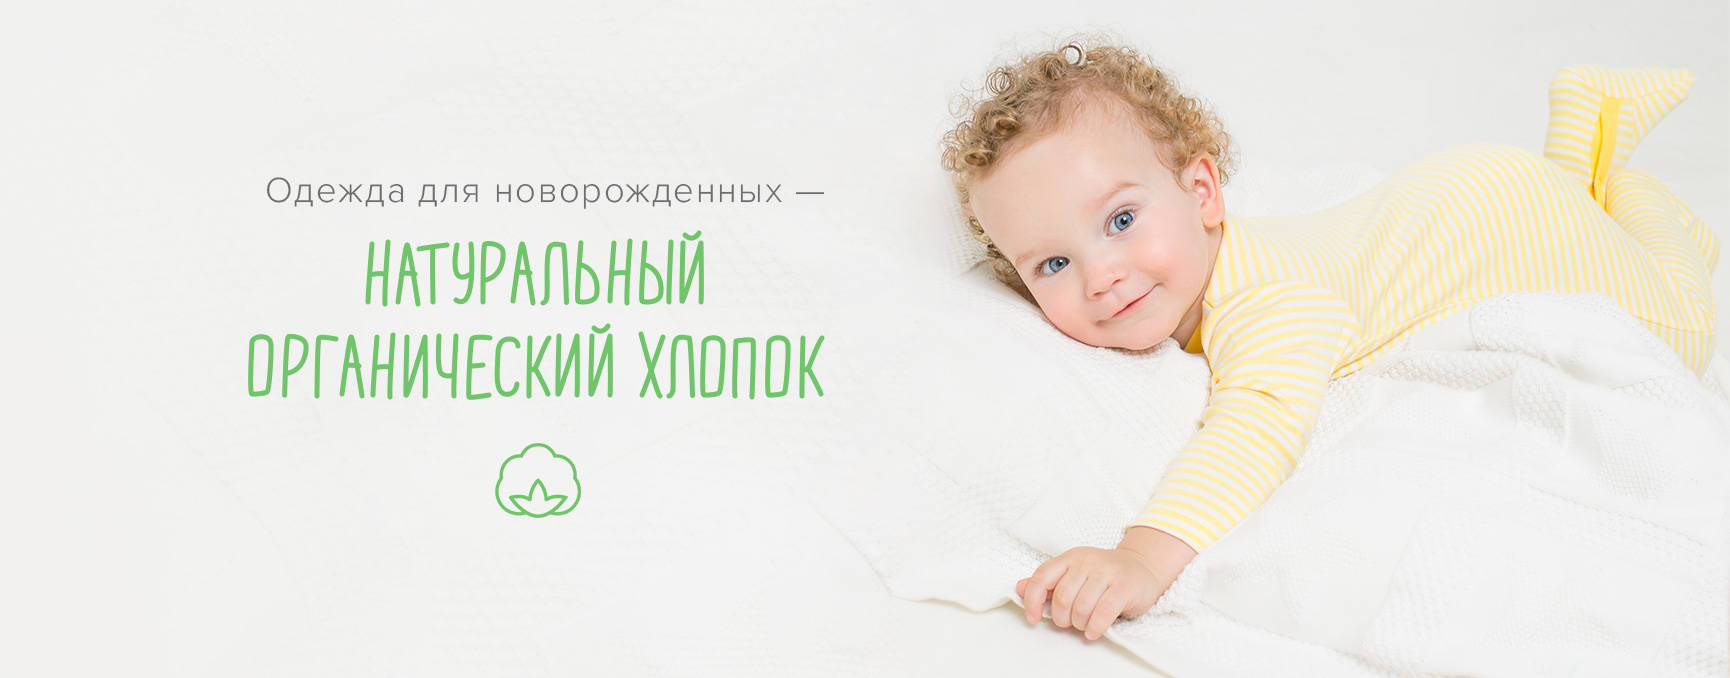 Крокид Интернет Магазин Детской Одежды Распродажа Екатеринбург